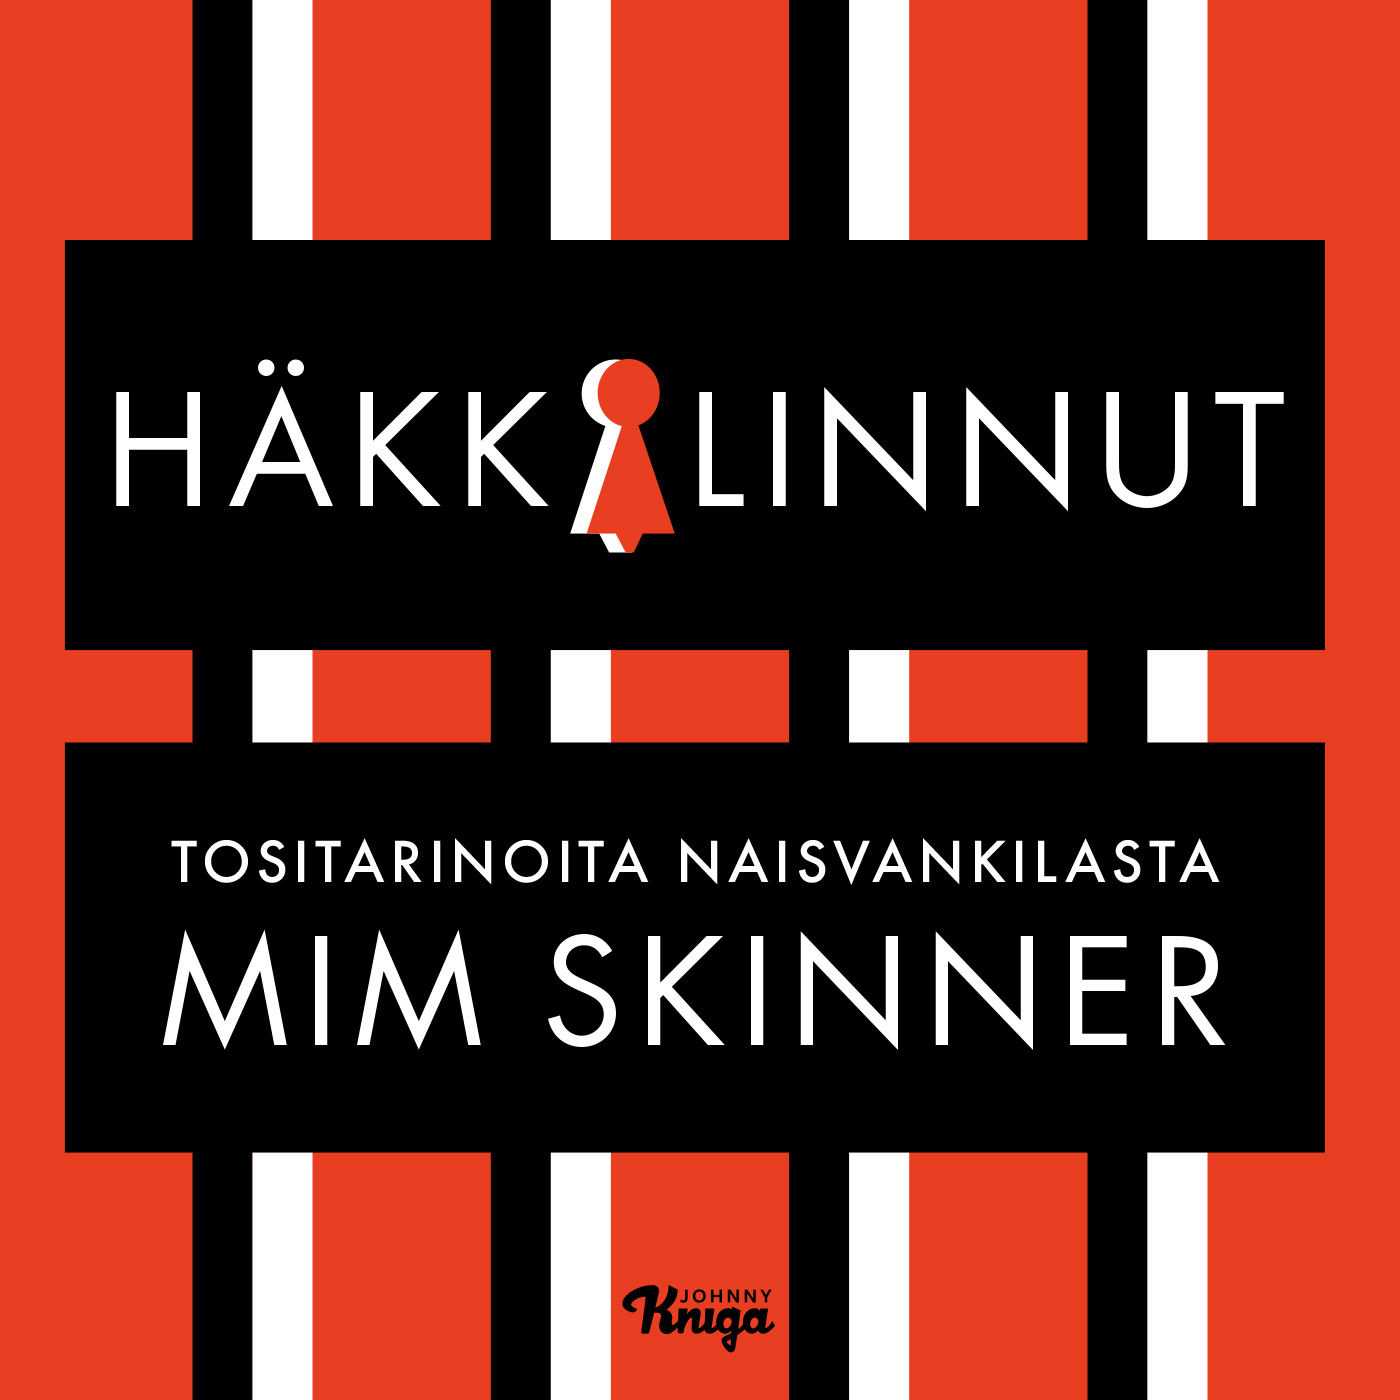 Skinner, Mim - Häkkilinnut: Tositarinoita naisvankilasta, äänikirja